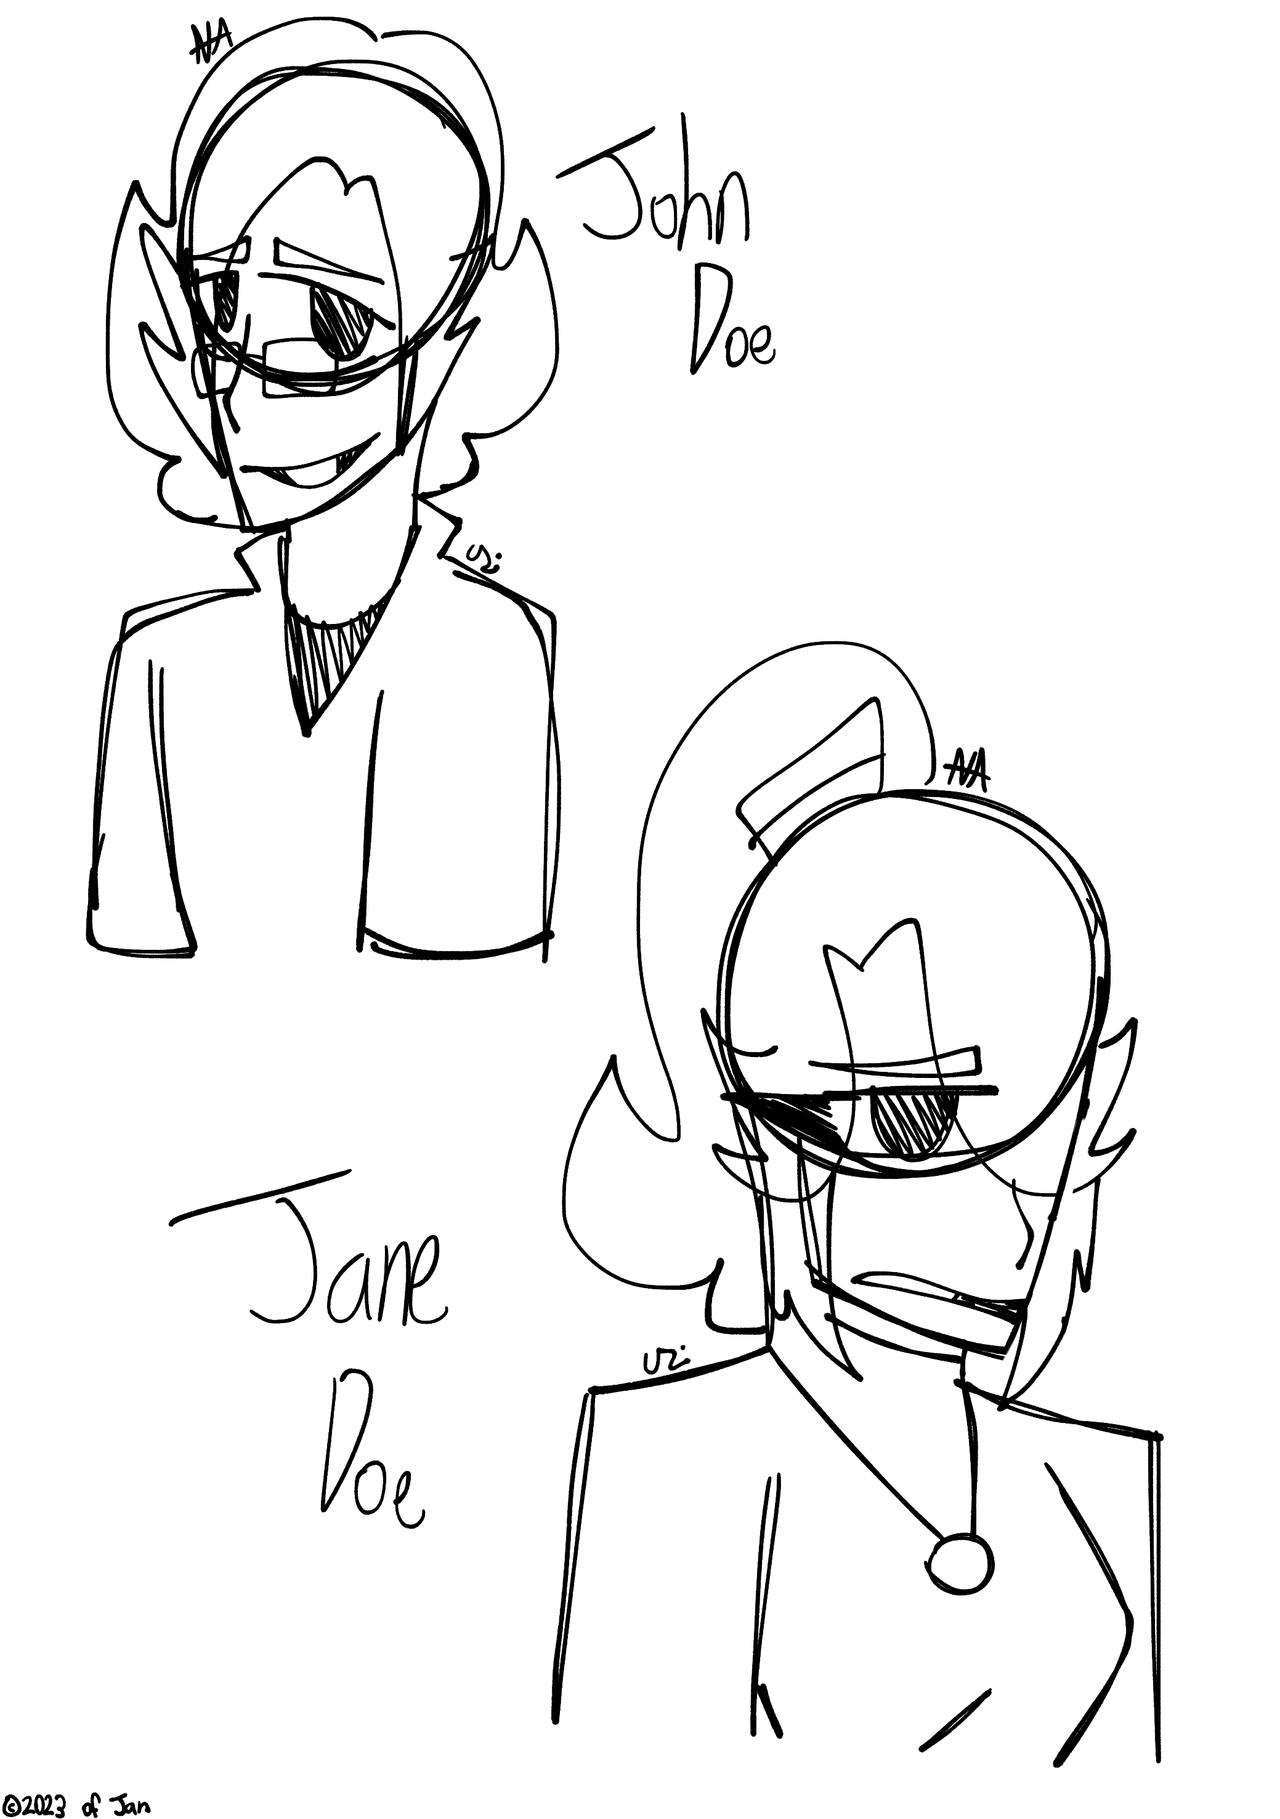 John Doe & Jane Doe